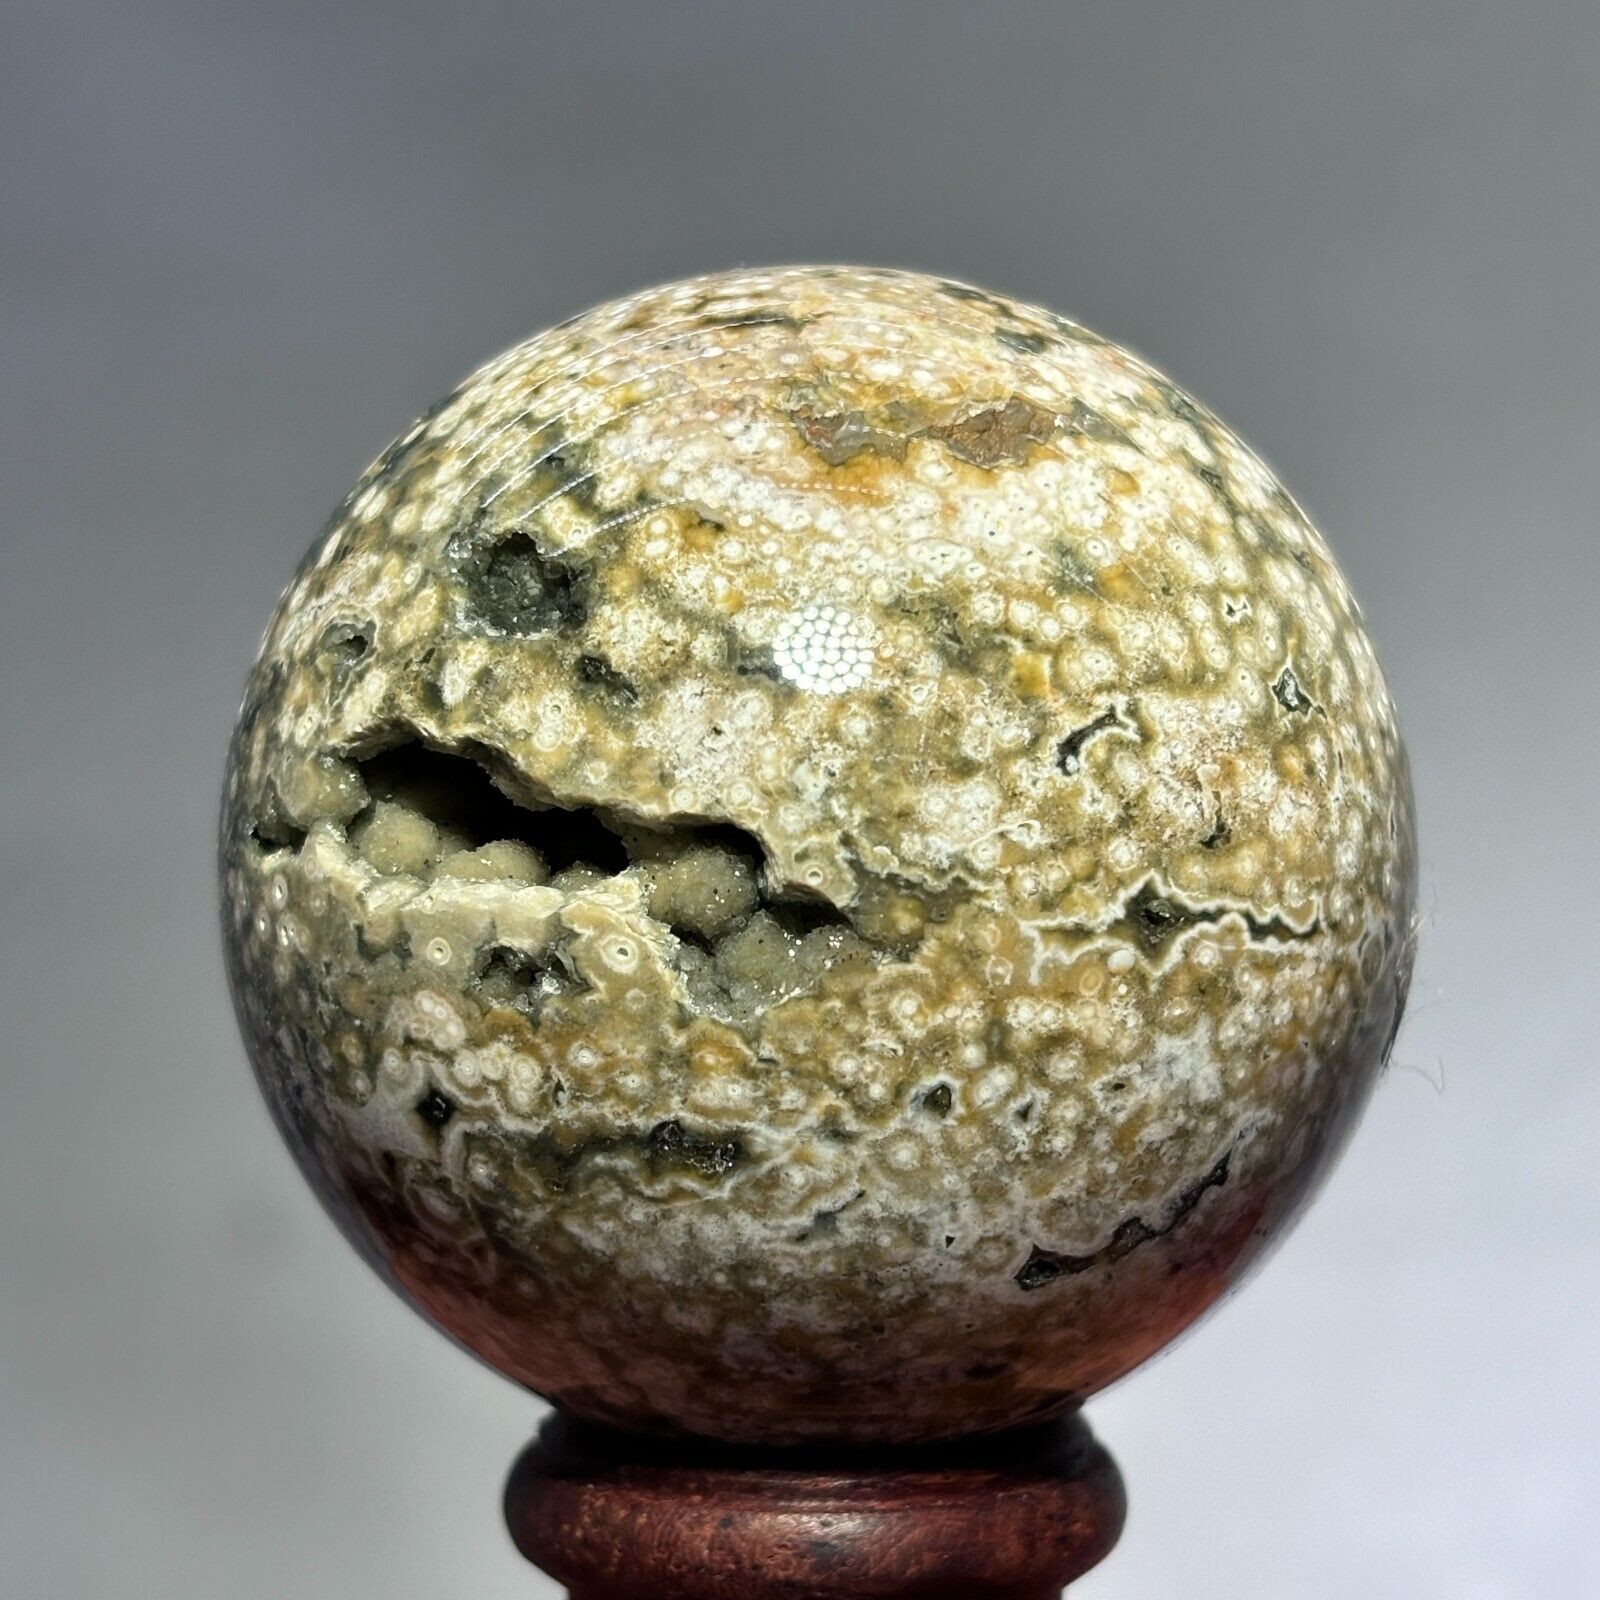 TopNatural Ocean Jasper Sphere Quartz Crystal Ball Specimen Energy Stone